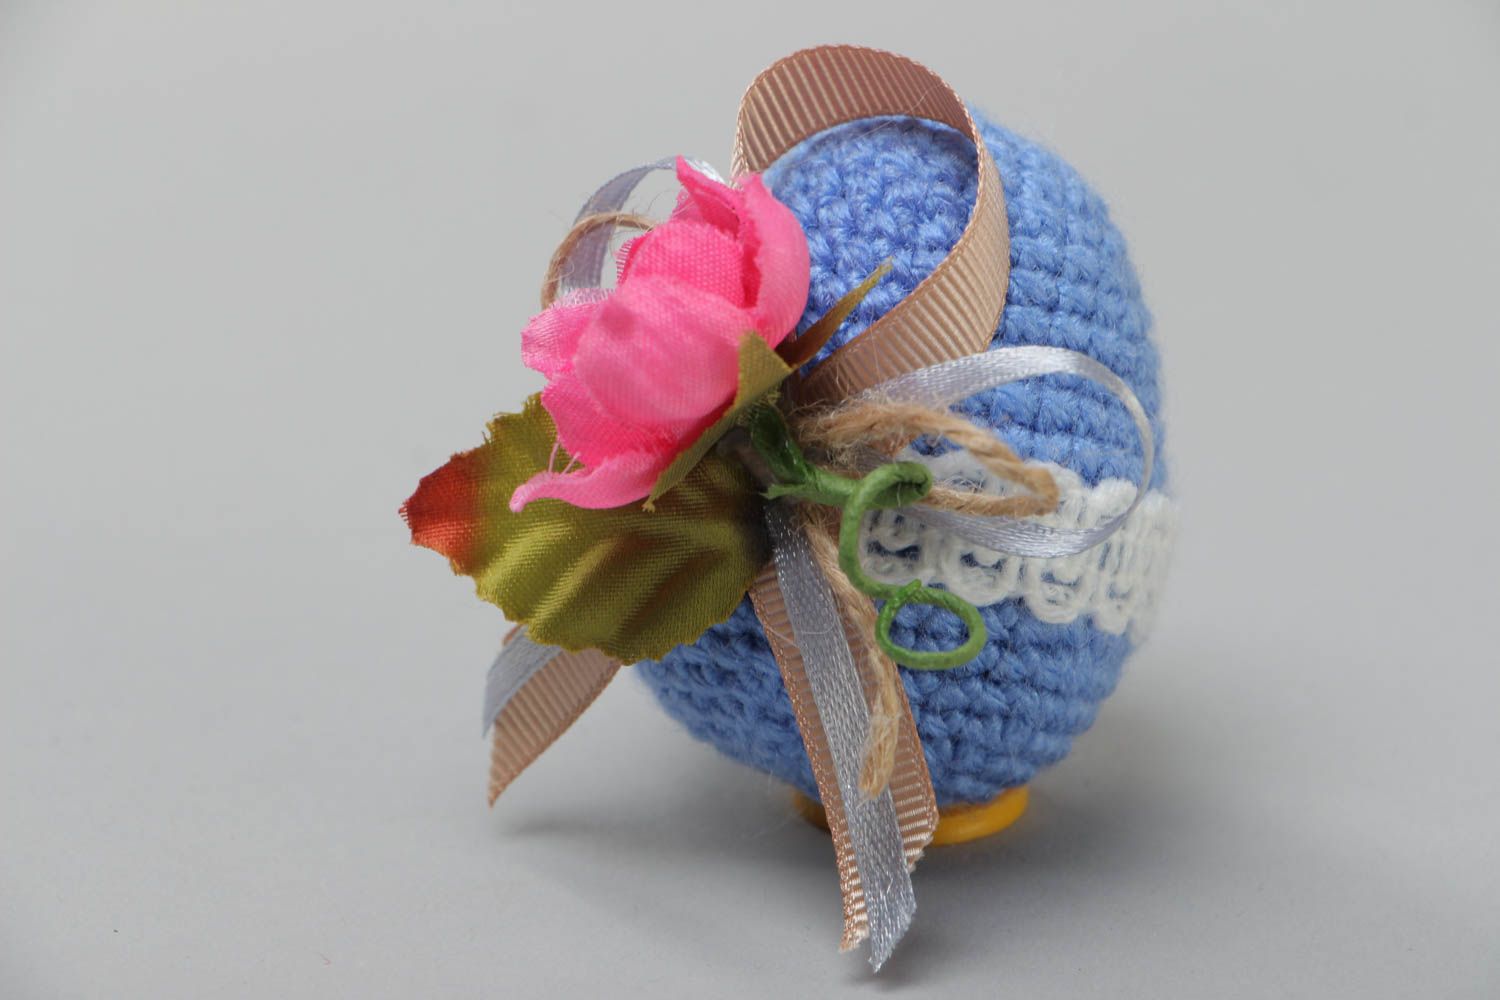 Яйцо связанное крючком из акрила с цветами мягкое интерьерное ручной работы фото 2